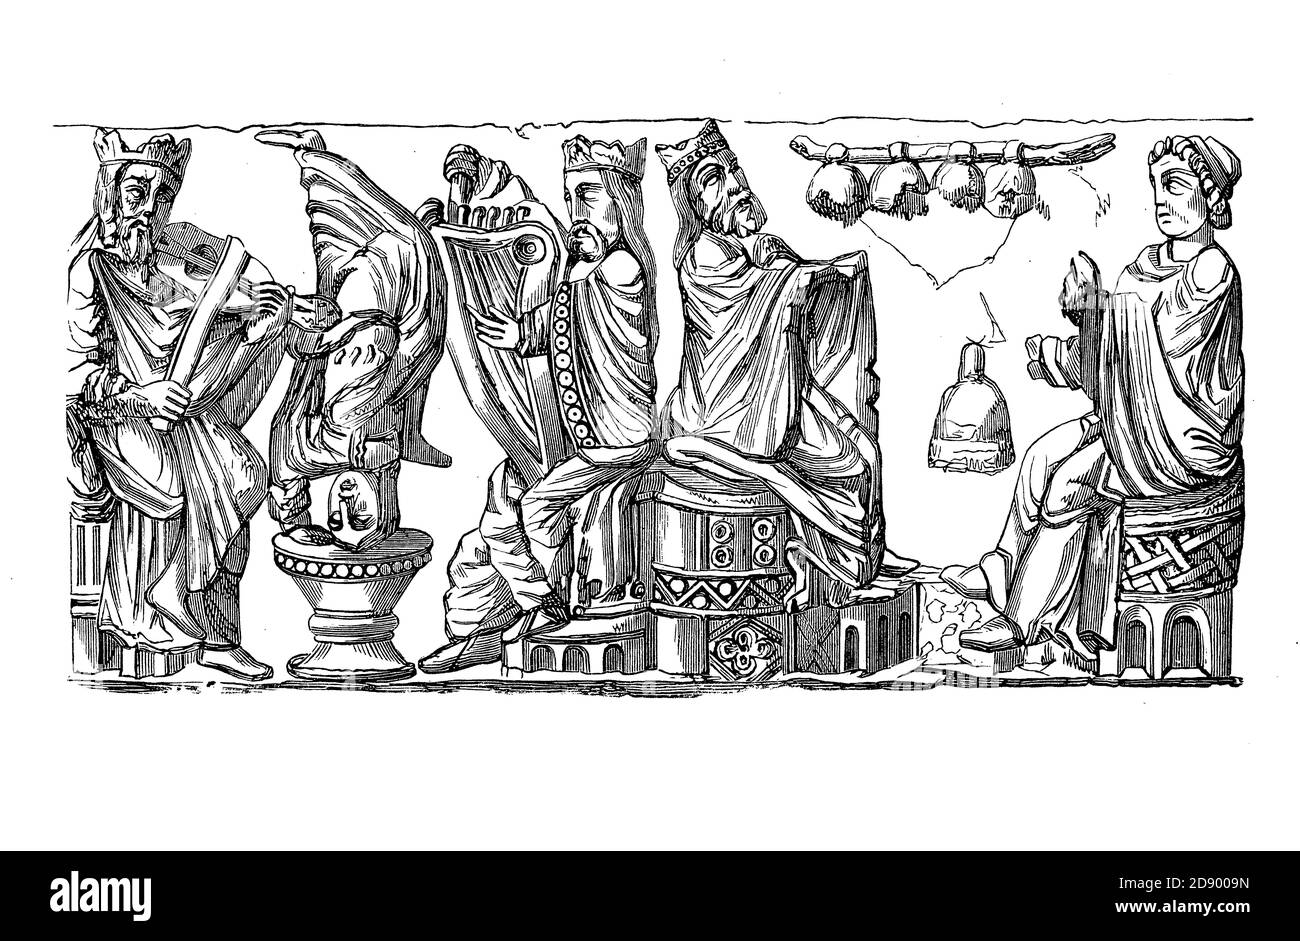 Mittelalterliche musikalische Darbietung: Edle Figuren, die Streichinstrumente und Glocken spielen, und ein Scherzschnitt auf dem Kopf, Basrelief aus dem 11. Jahrhundert Stockfoto